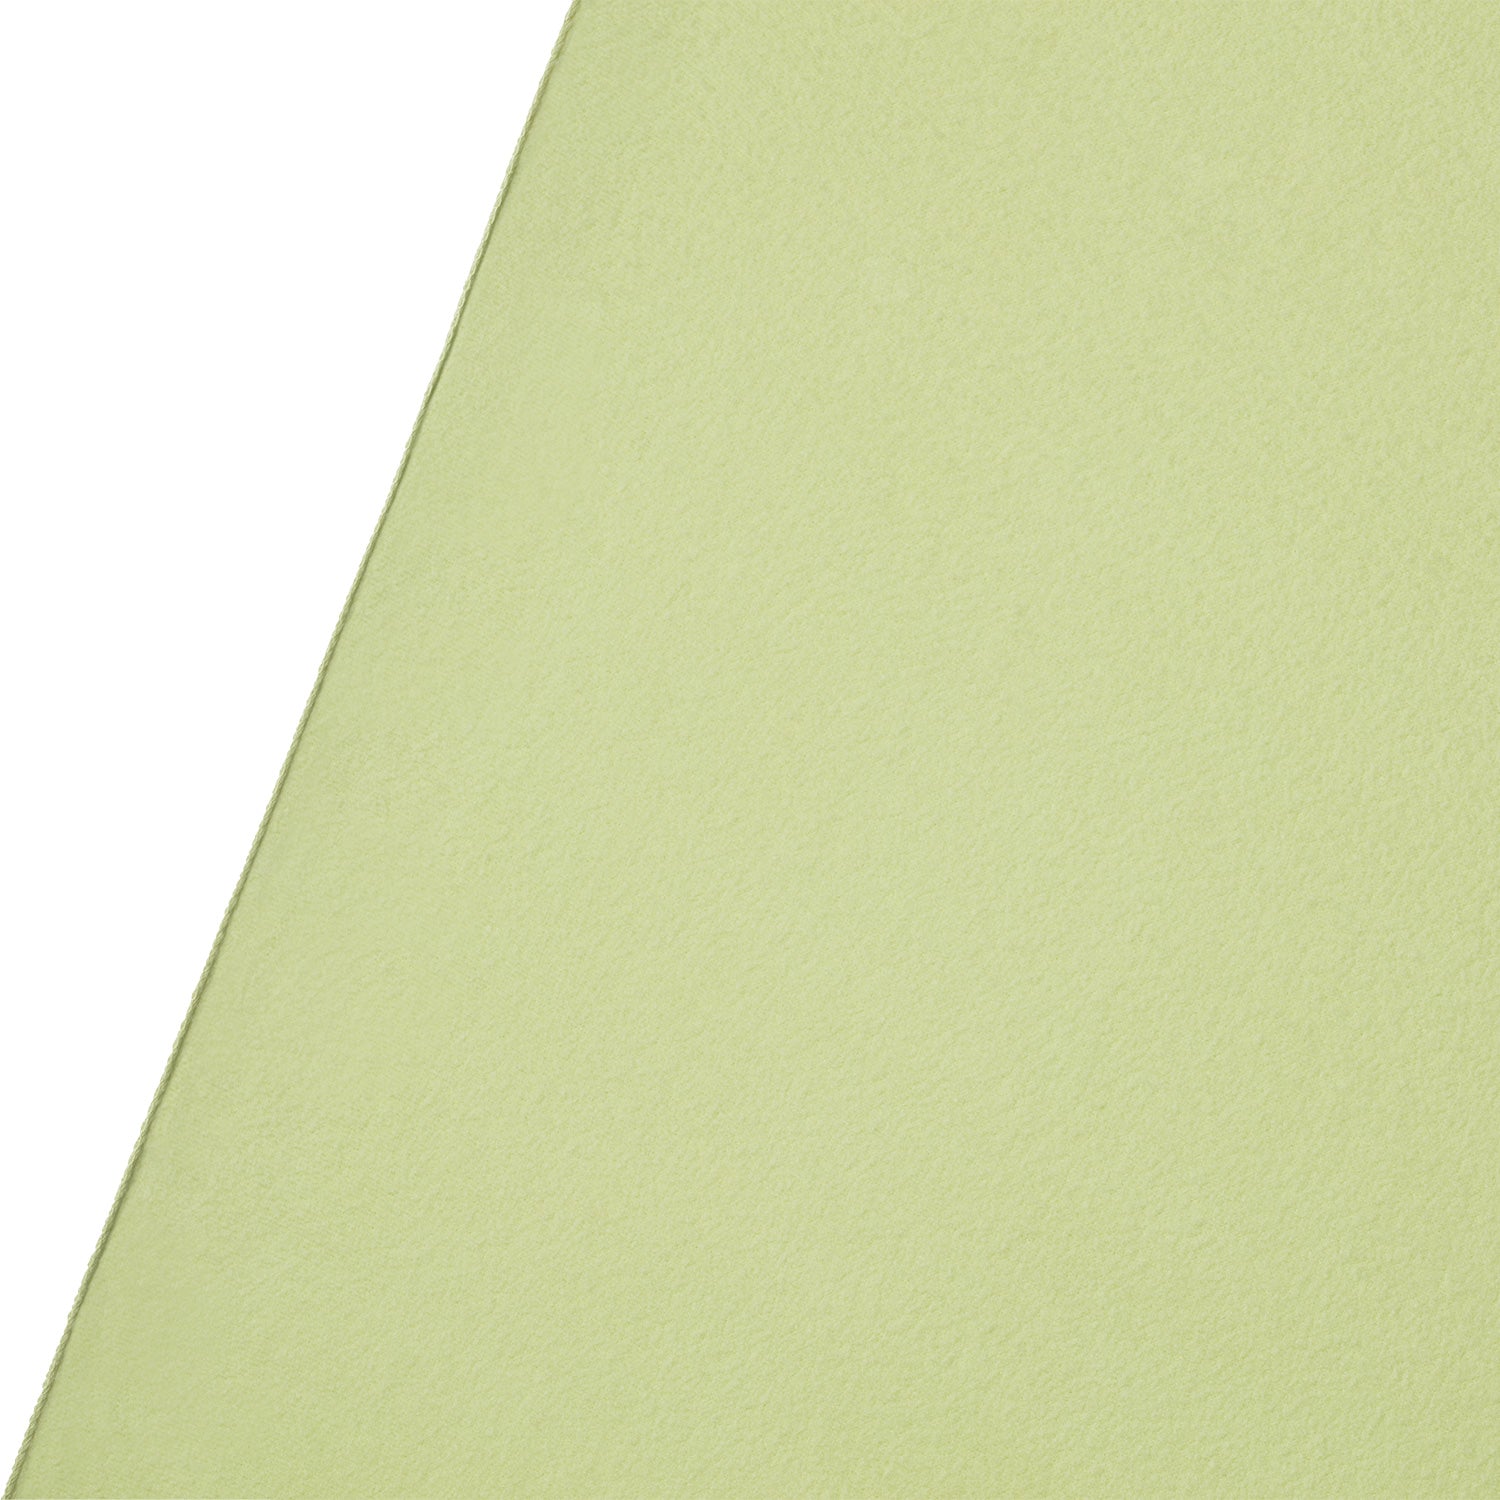 X-Drop Pro Wrinkle-Resistant Backdrop - Light Moss Green (8' x 8')